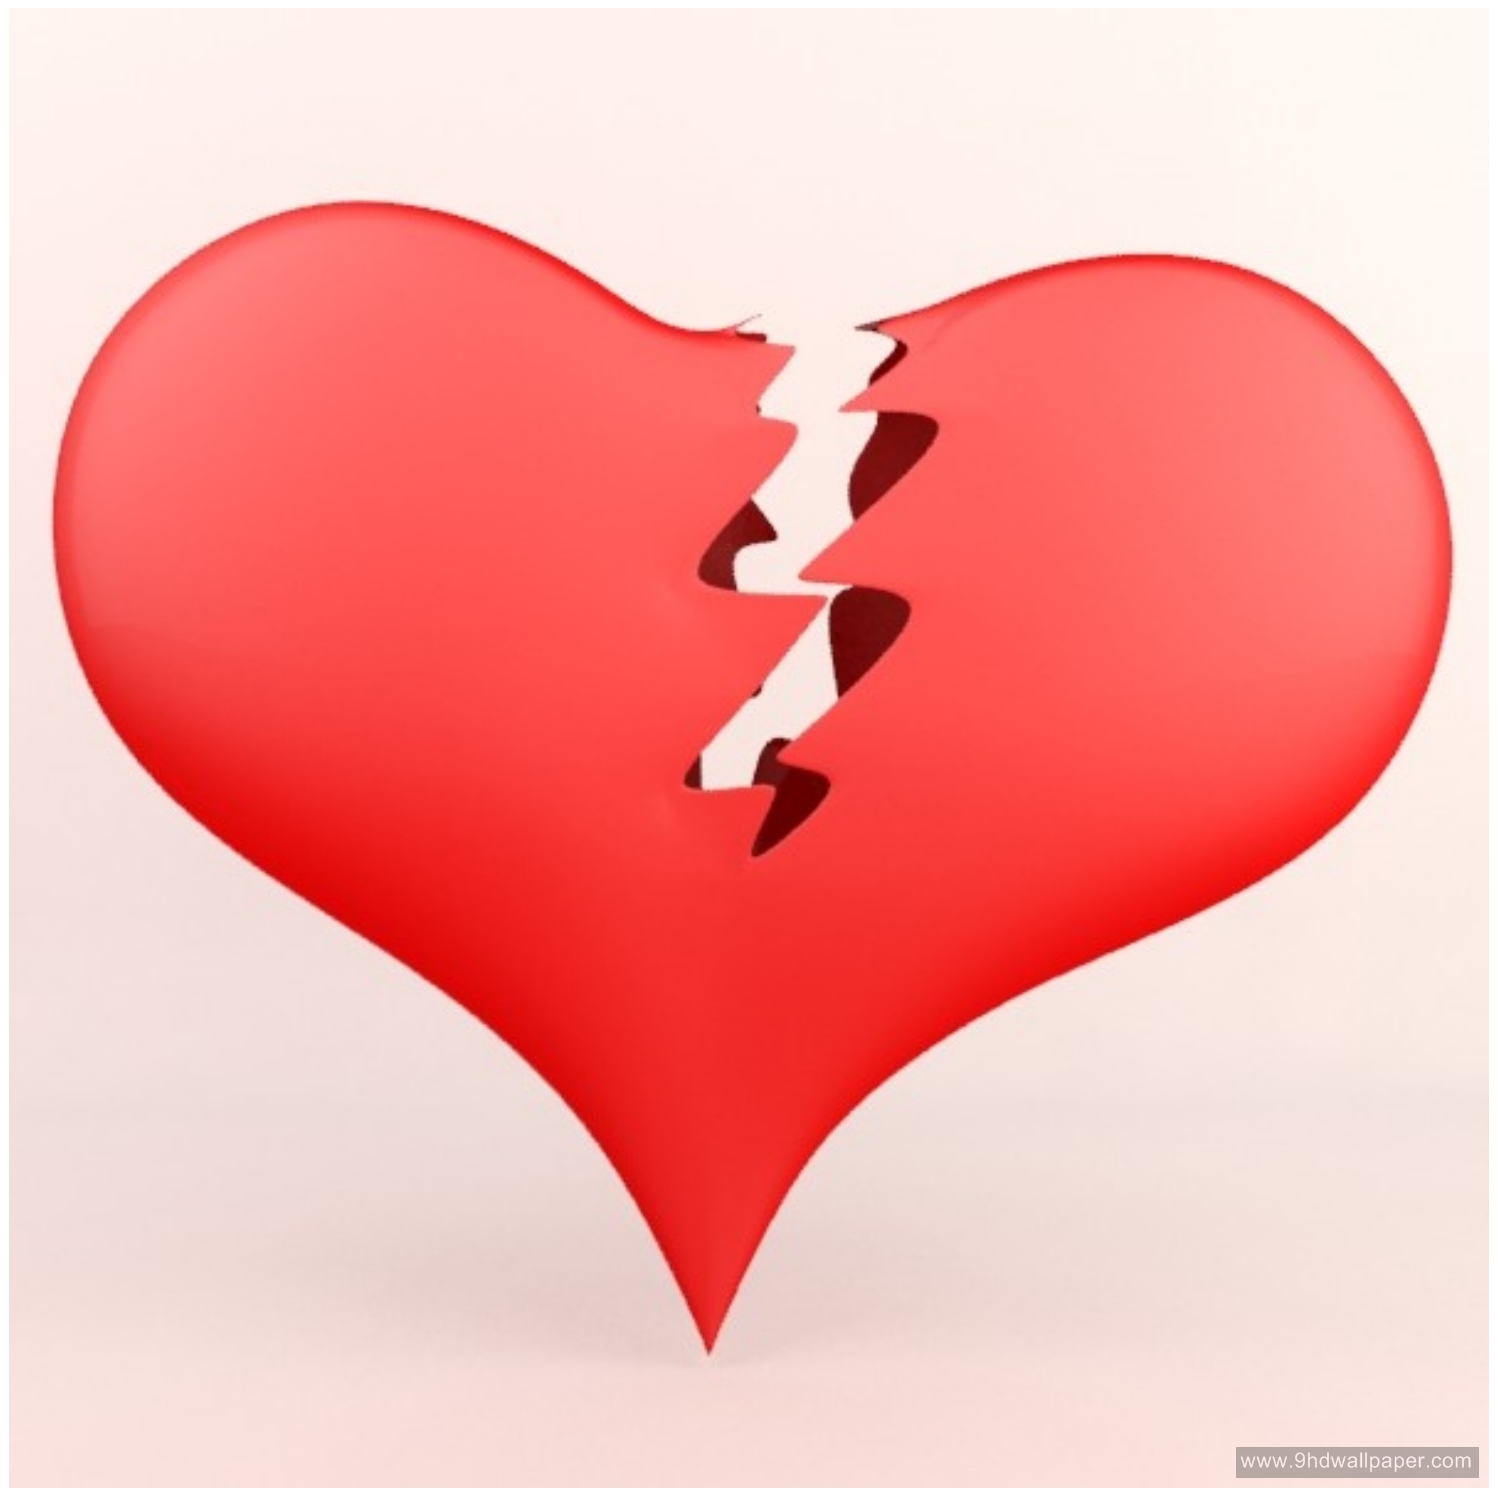 Sad Heart Broken 3d Images Love Wallpapers Hd Download